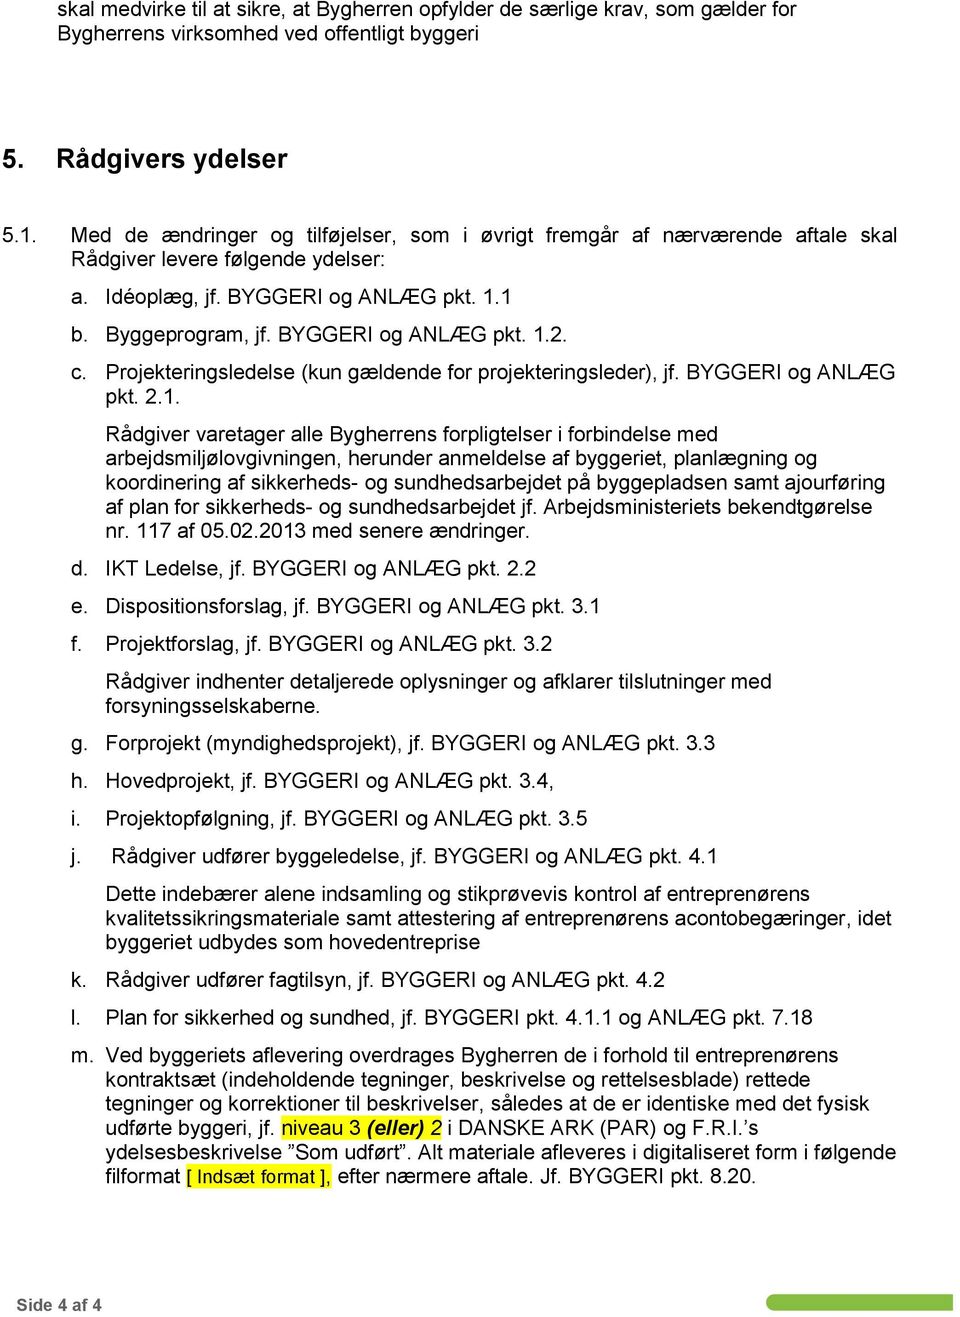 c. Projekteringsledelse (kun gældende for projekteringsleder), jf. BYGGERI og ANLÆG pkt. 2.1.